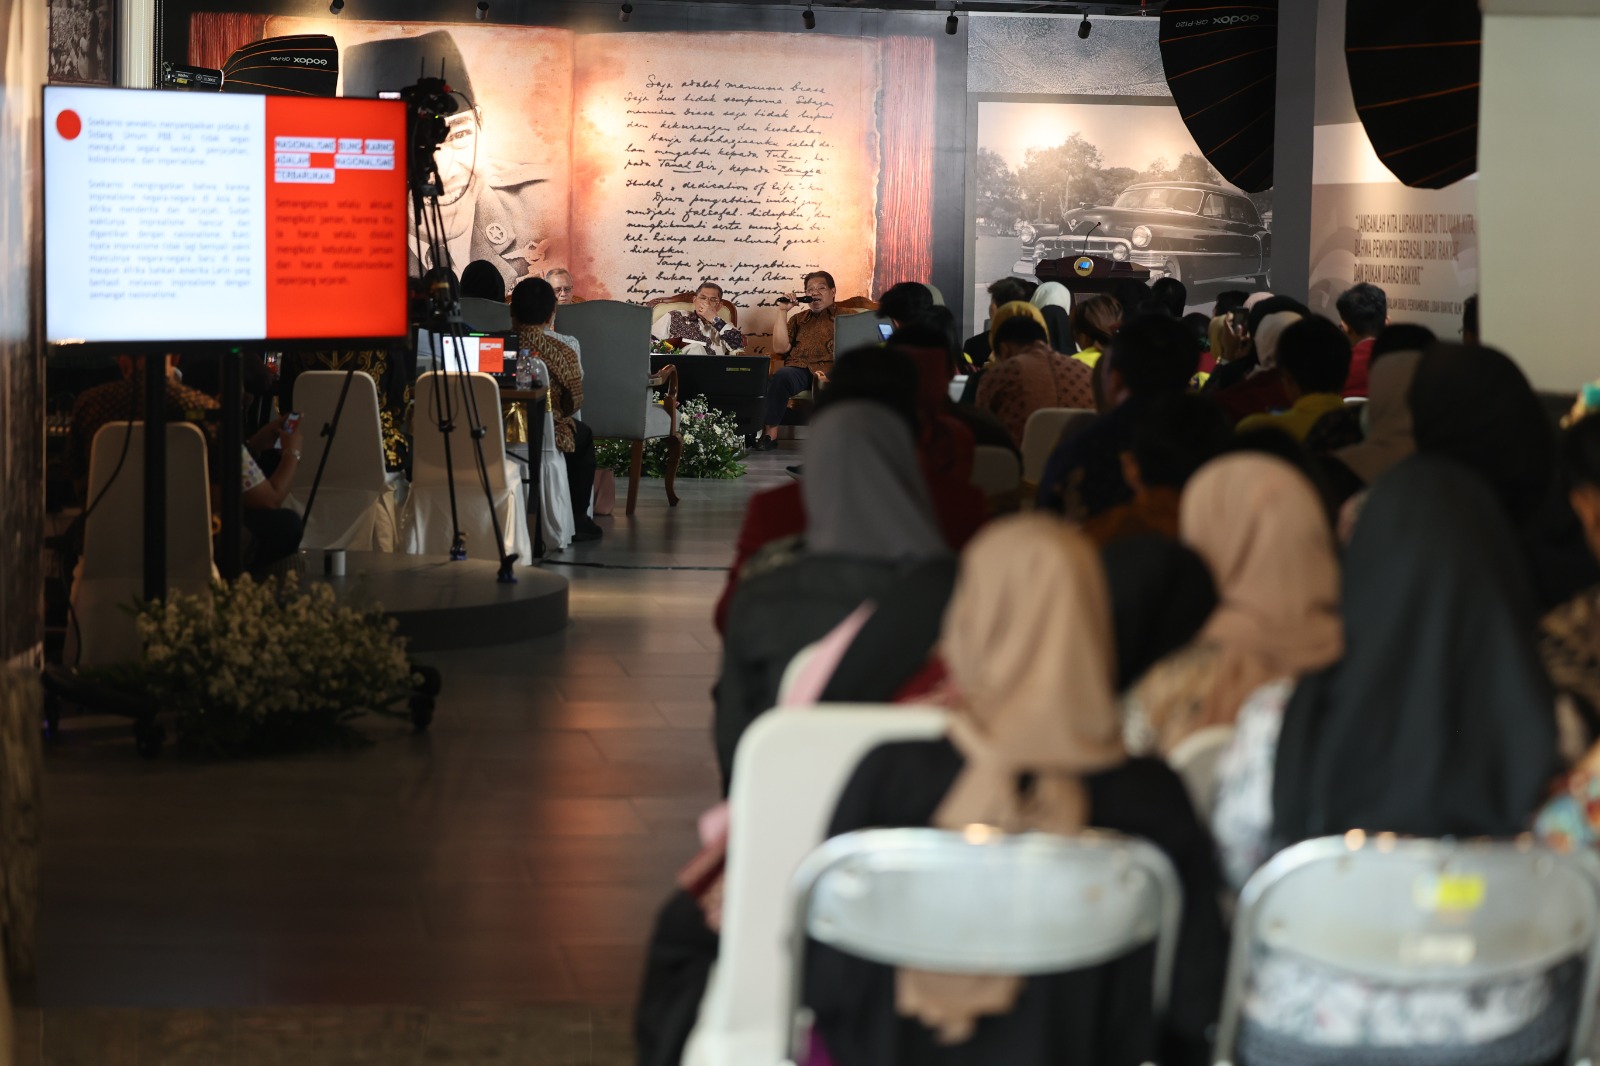 Peringatan ke-63 Pidato Presiden Sukarno di Majelis Umum PBB ”to Build the World Anew” dan Relevansinya terhadap Peta Geopolitik saat ini